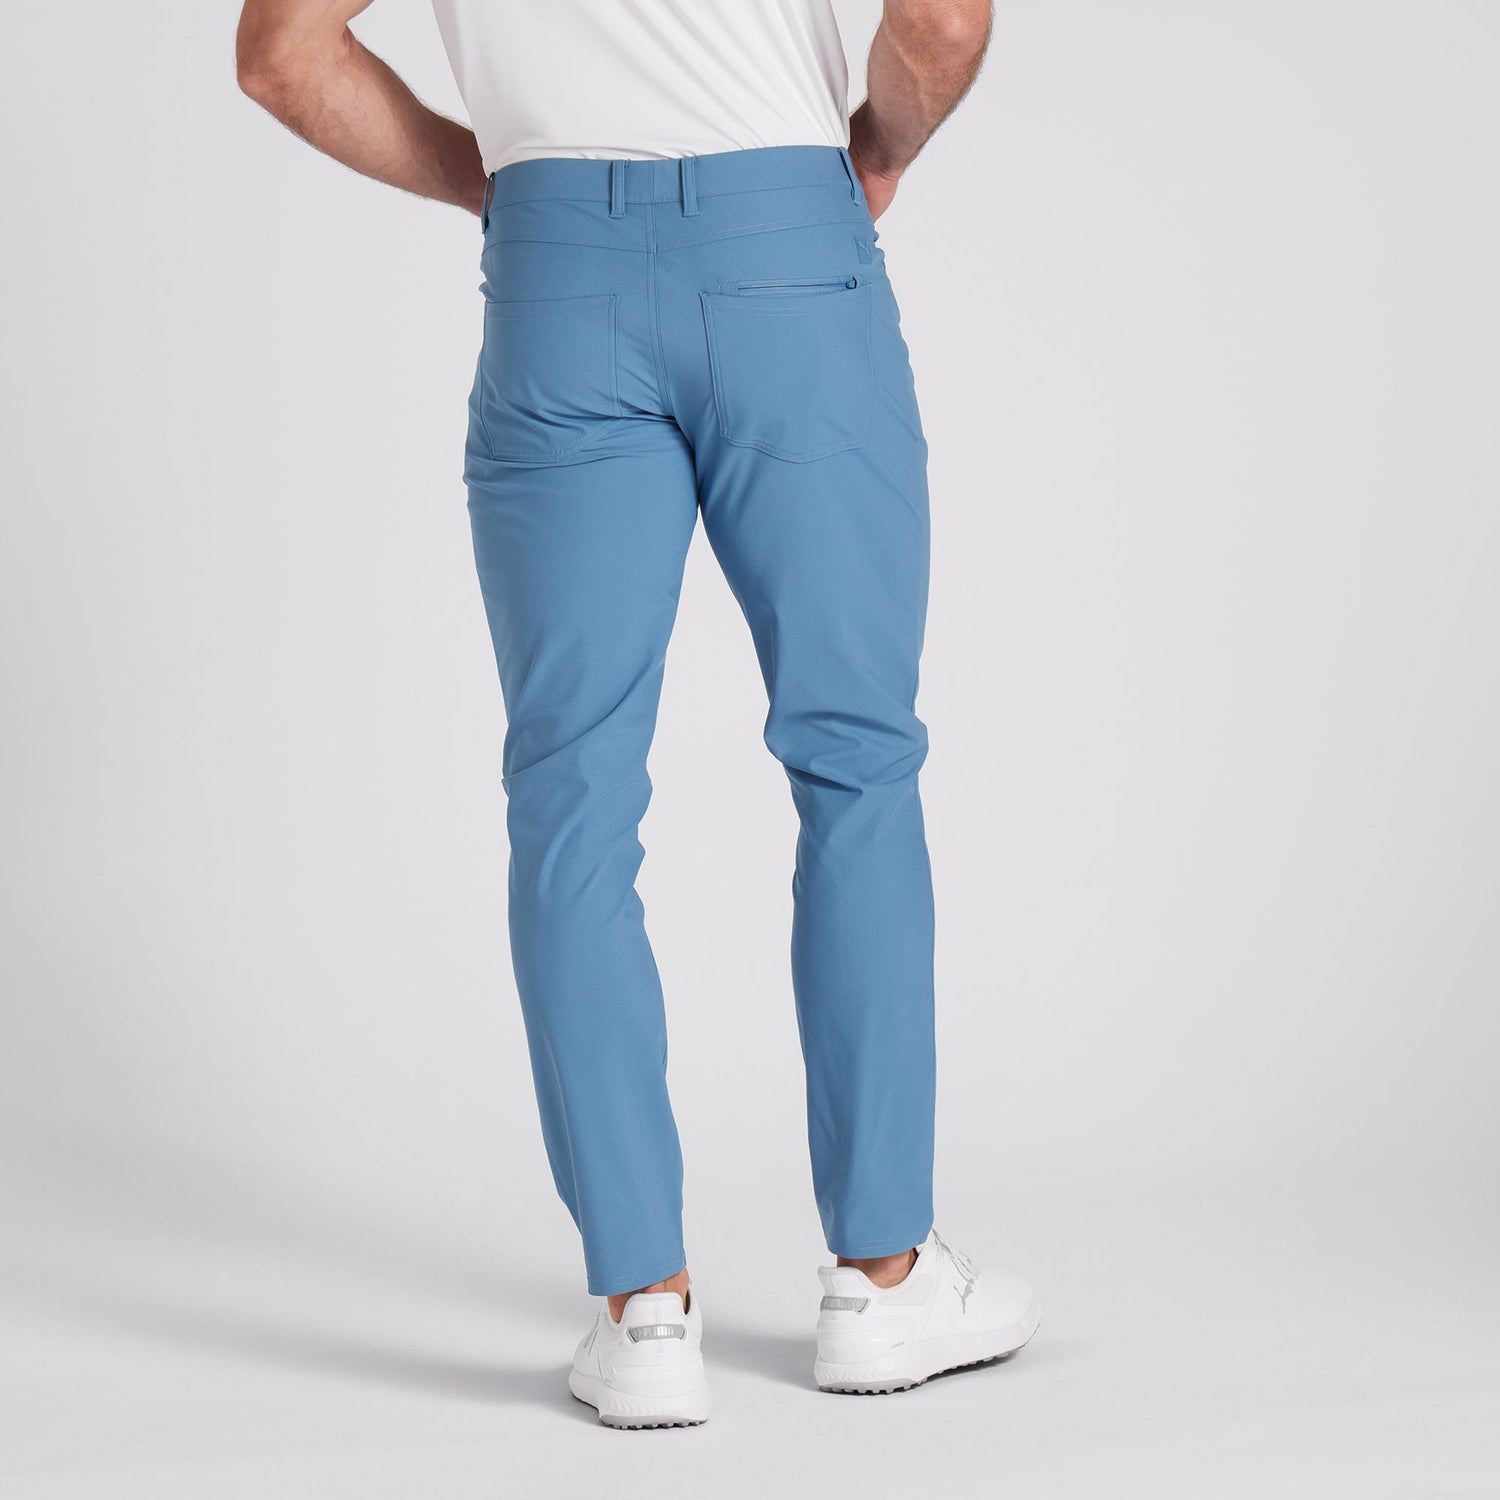 5-Pocket Golf Pants For Men